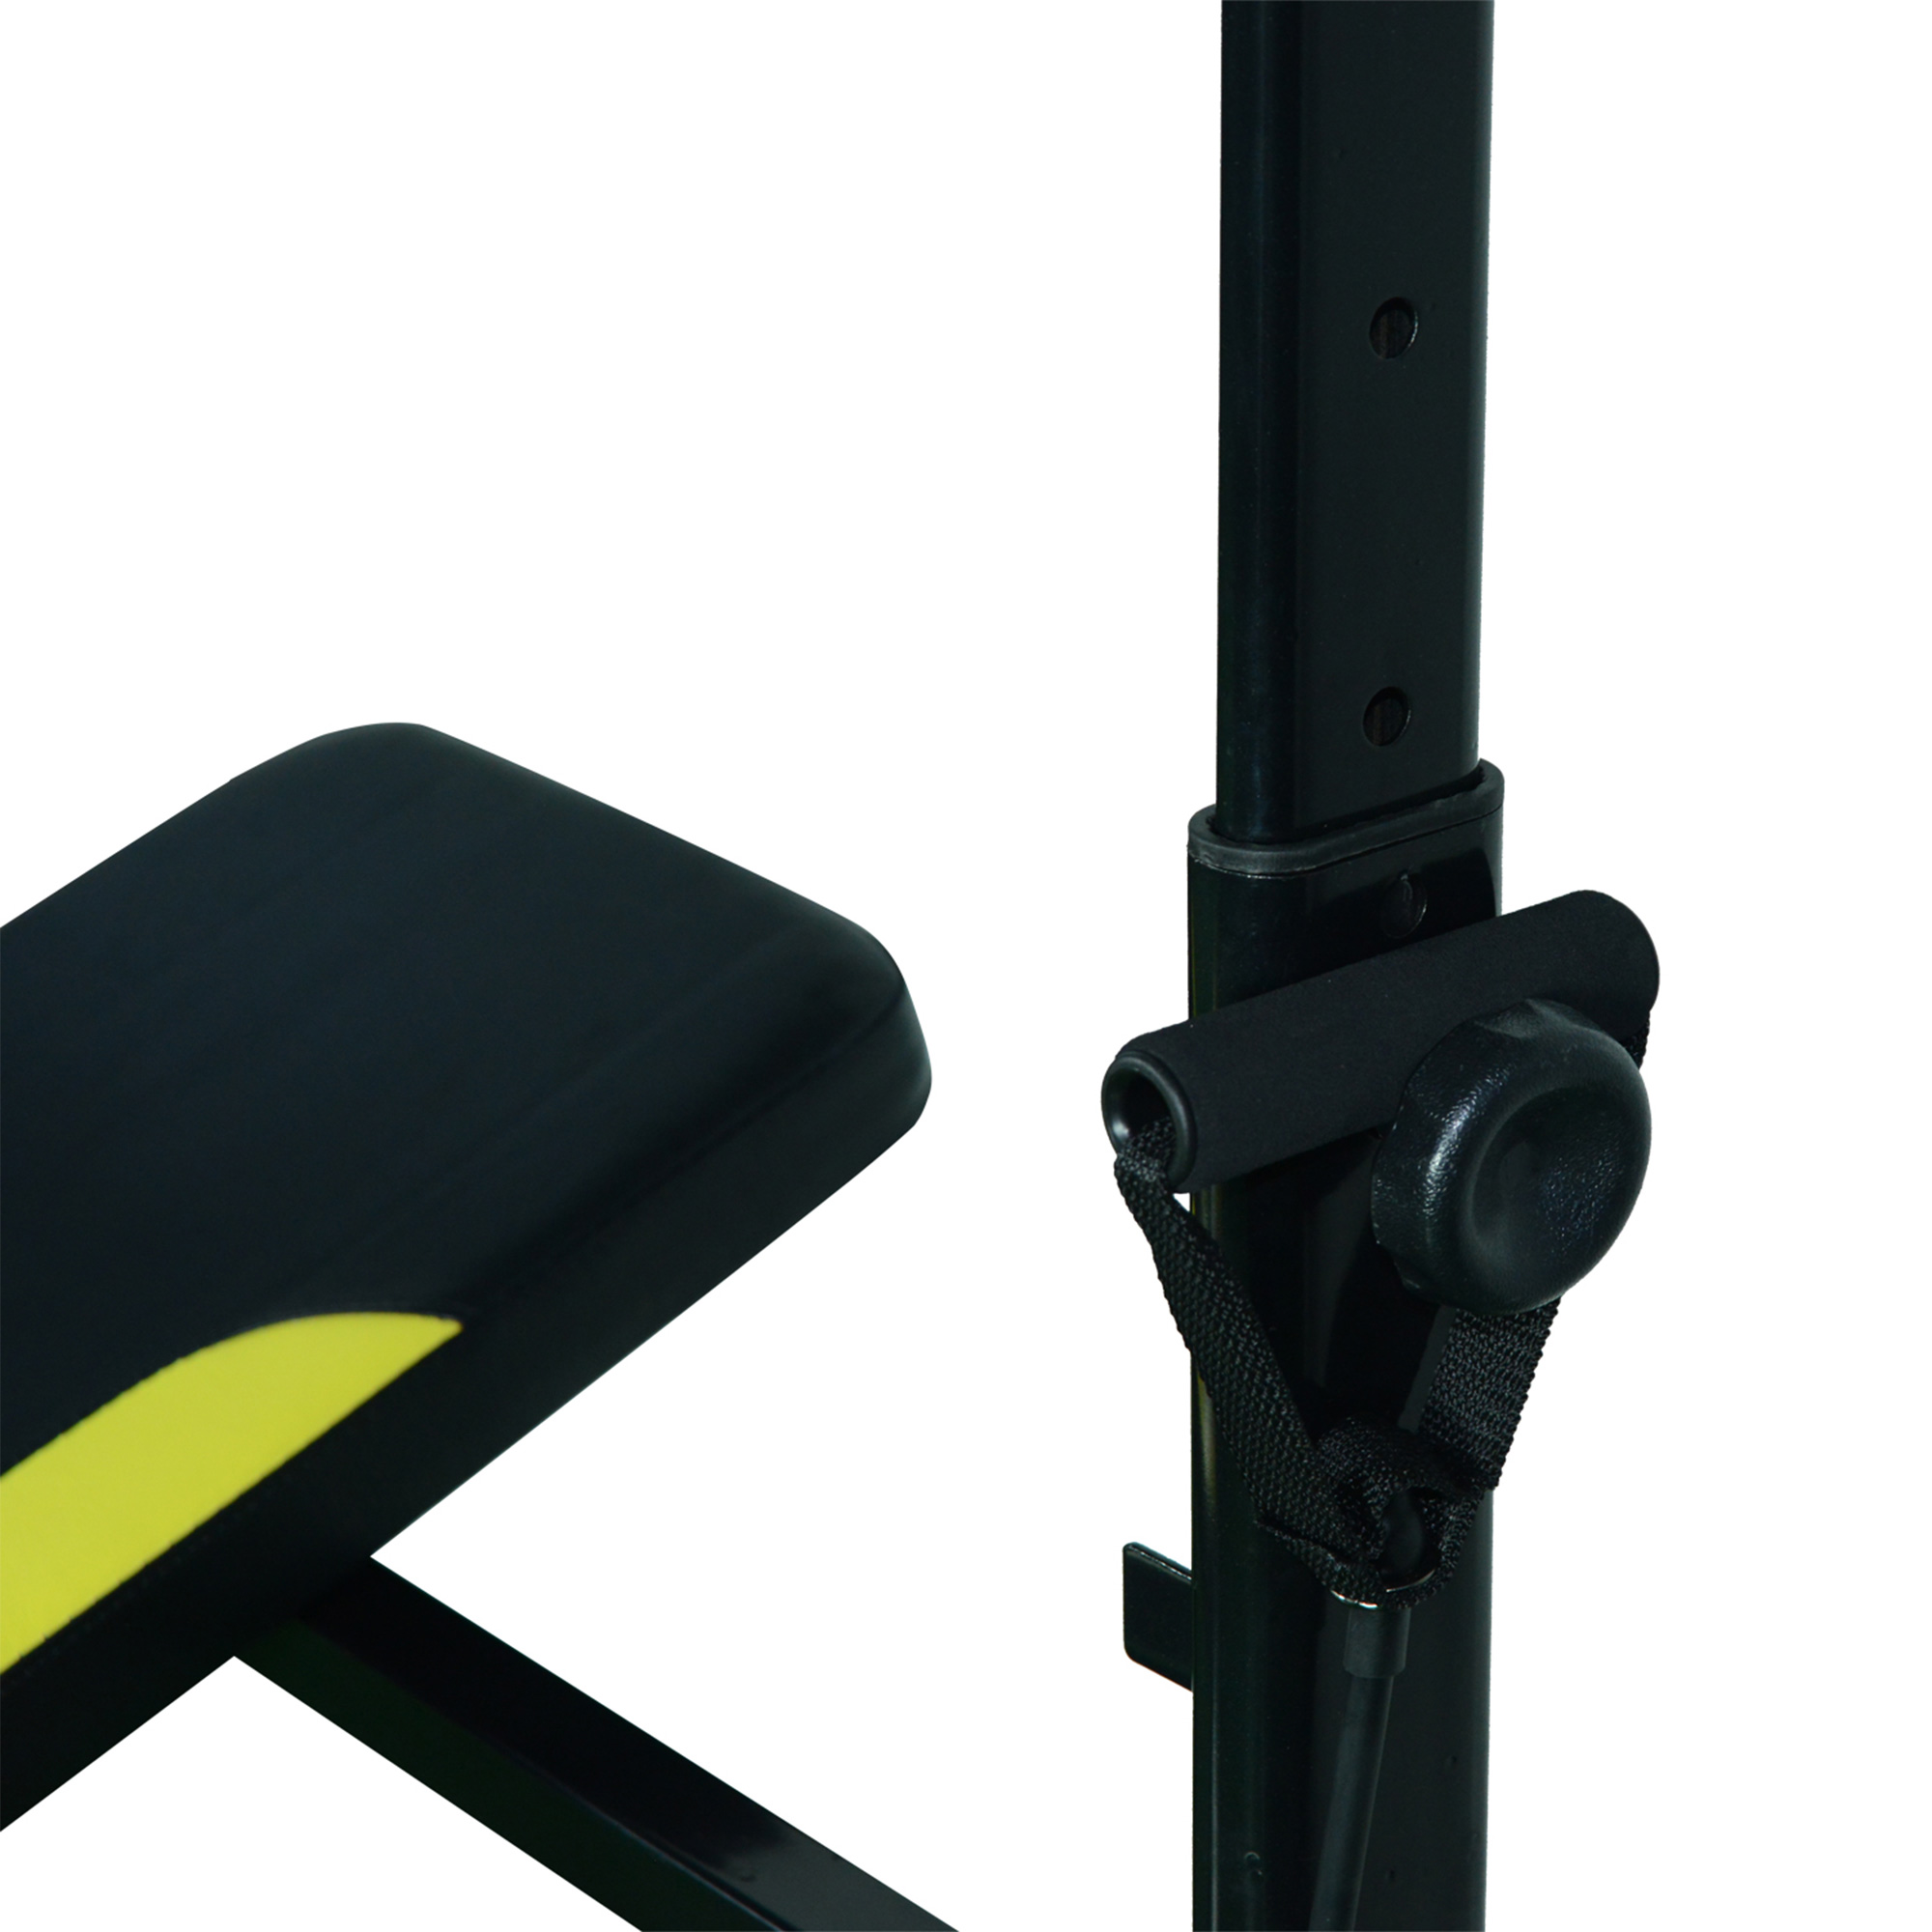 Banc de musculation Fitness entrainement complet dossier réglable cordes  traction curler supports barre et haltères noir et jaune